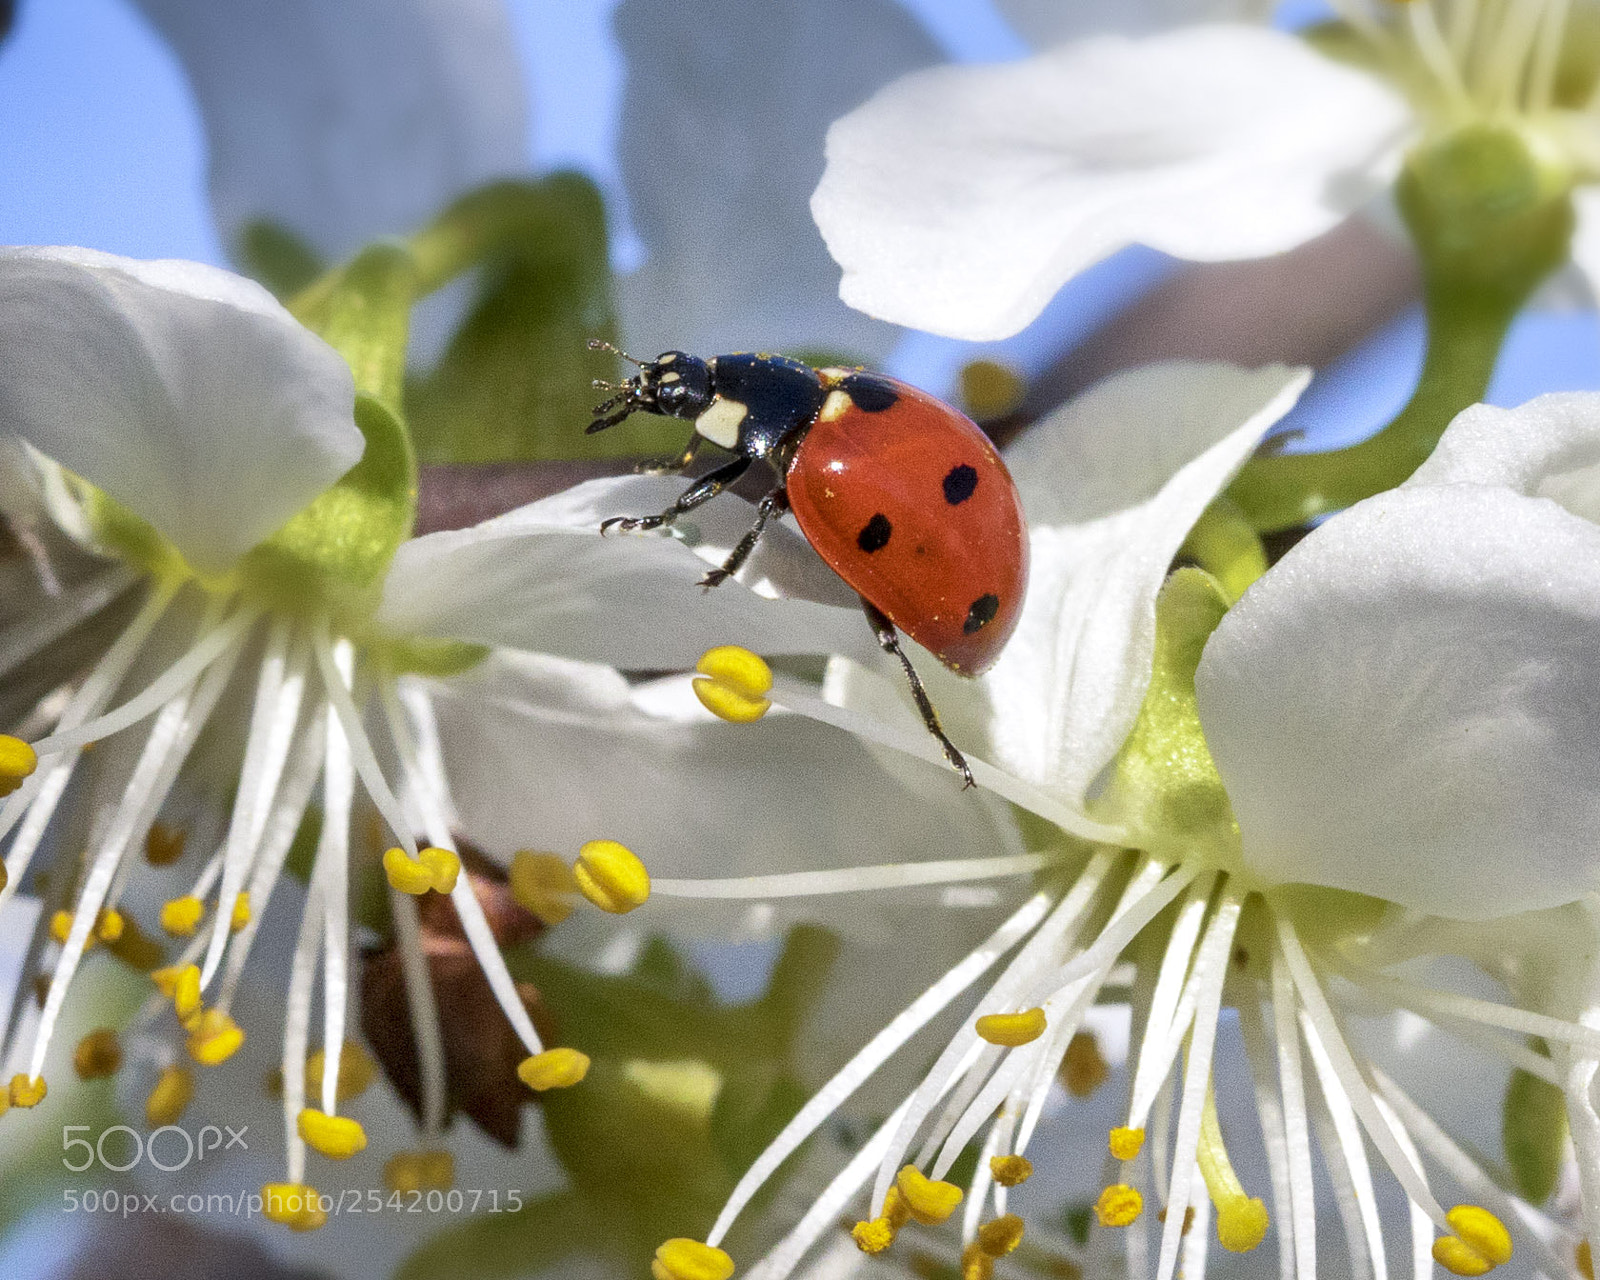 Canon EOS 7D Mark II sample photo. A ladybug on a photography